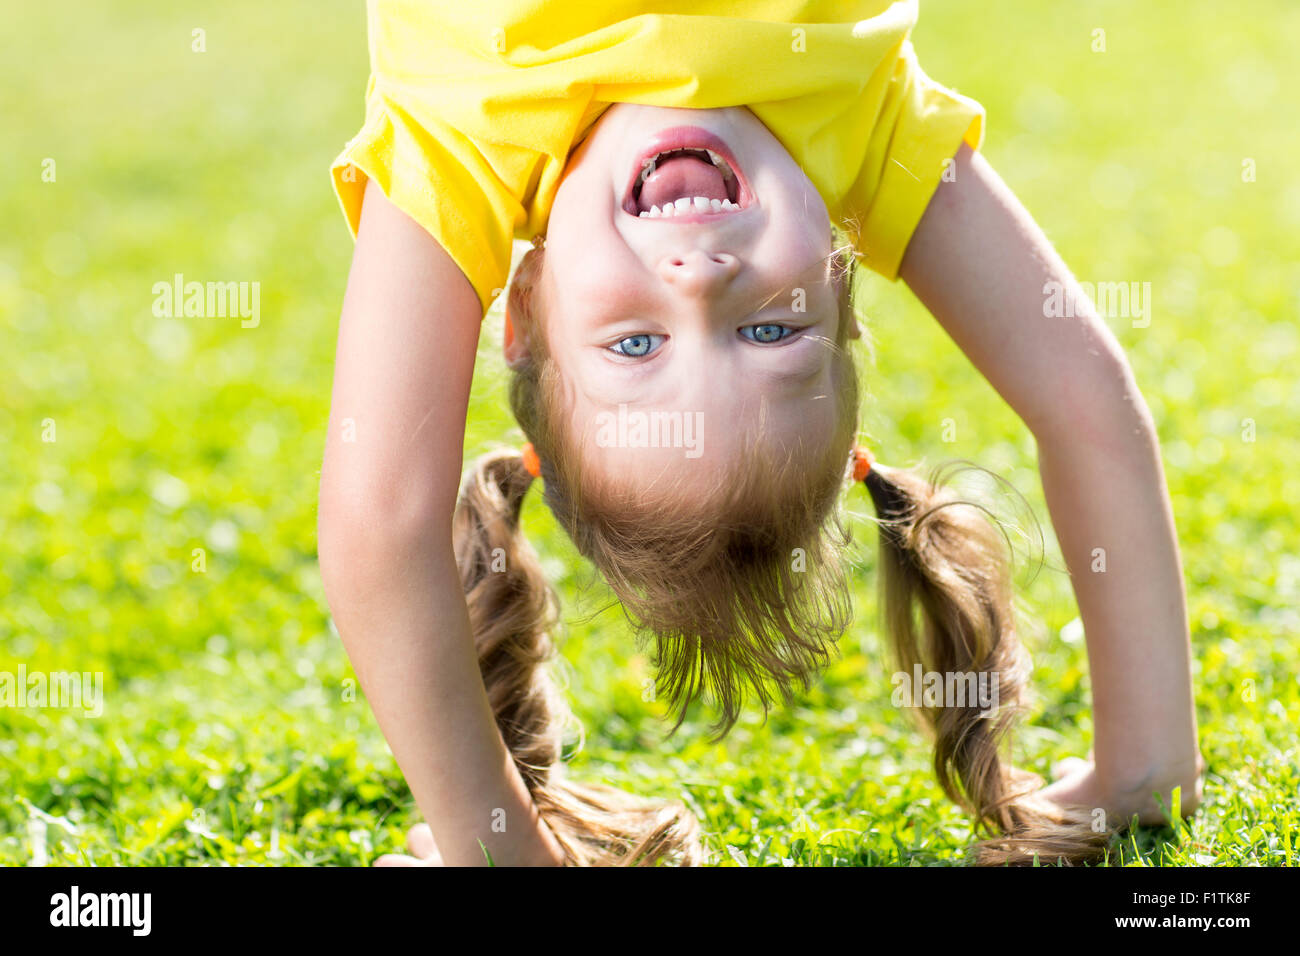 Glückliches Kind hat Spaß stehen Kopf nach unten auf dem grünen Rasen Stockfoto